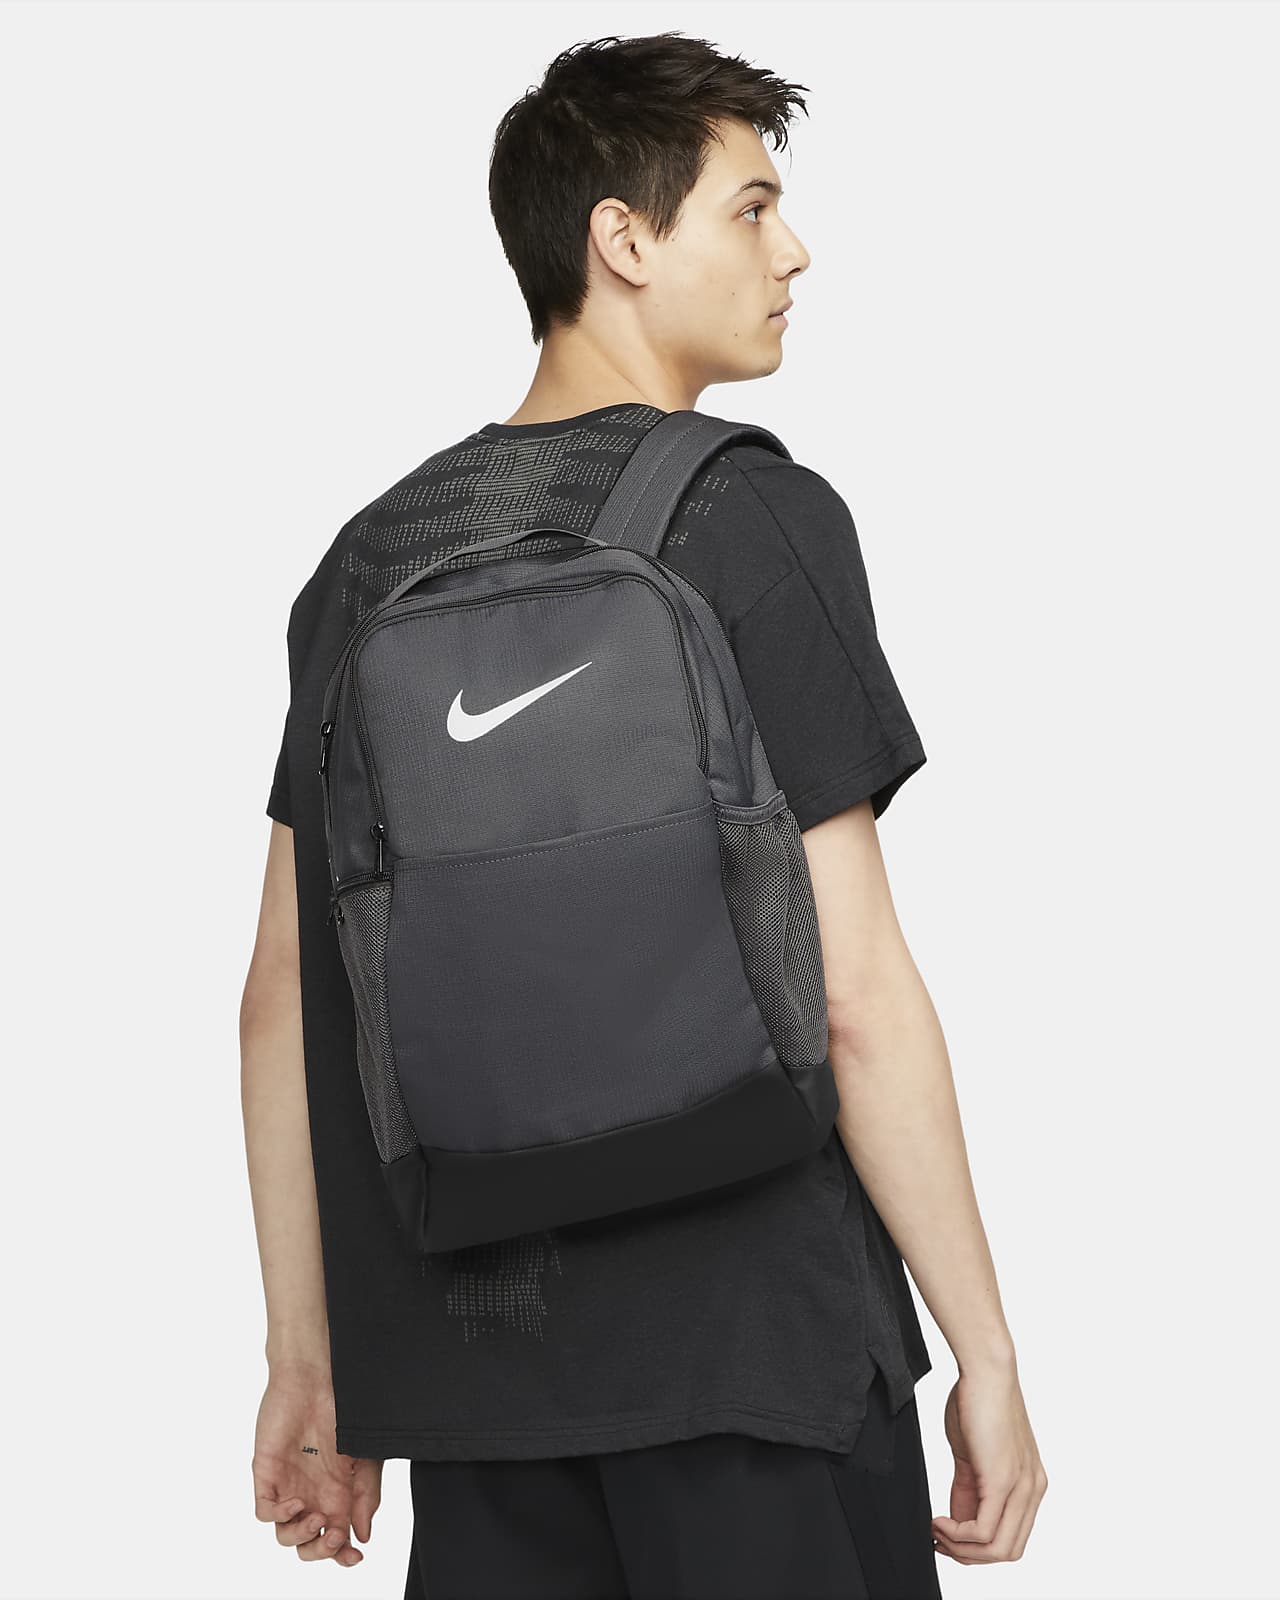 Nike Brasilia 9.5 Training Backpack